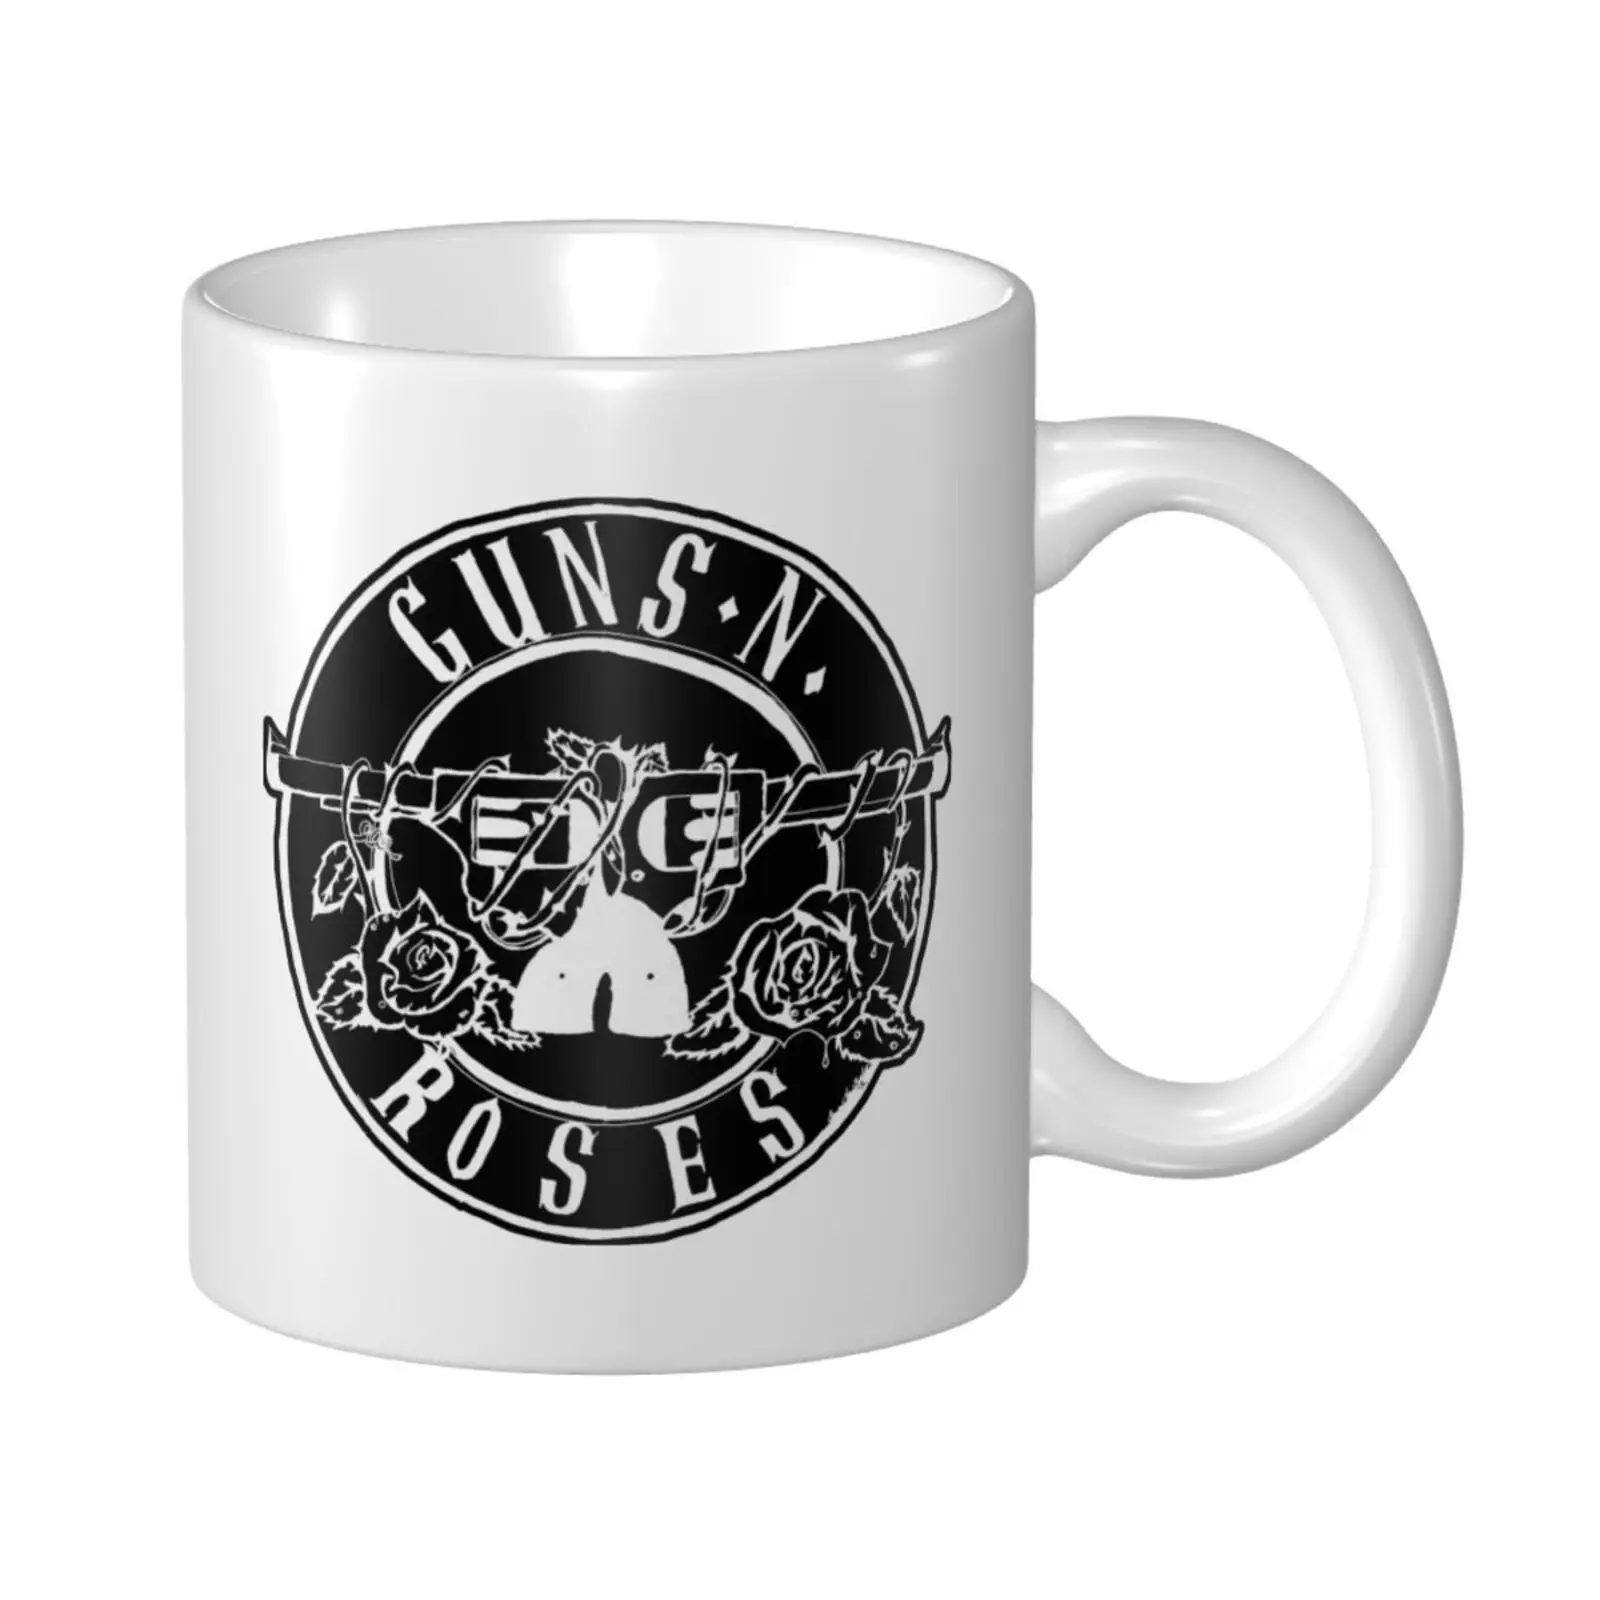 Guns N Roses-taza de porcelana para té, utensilios de cocina, 5 tazas